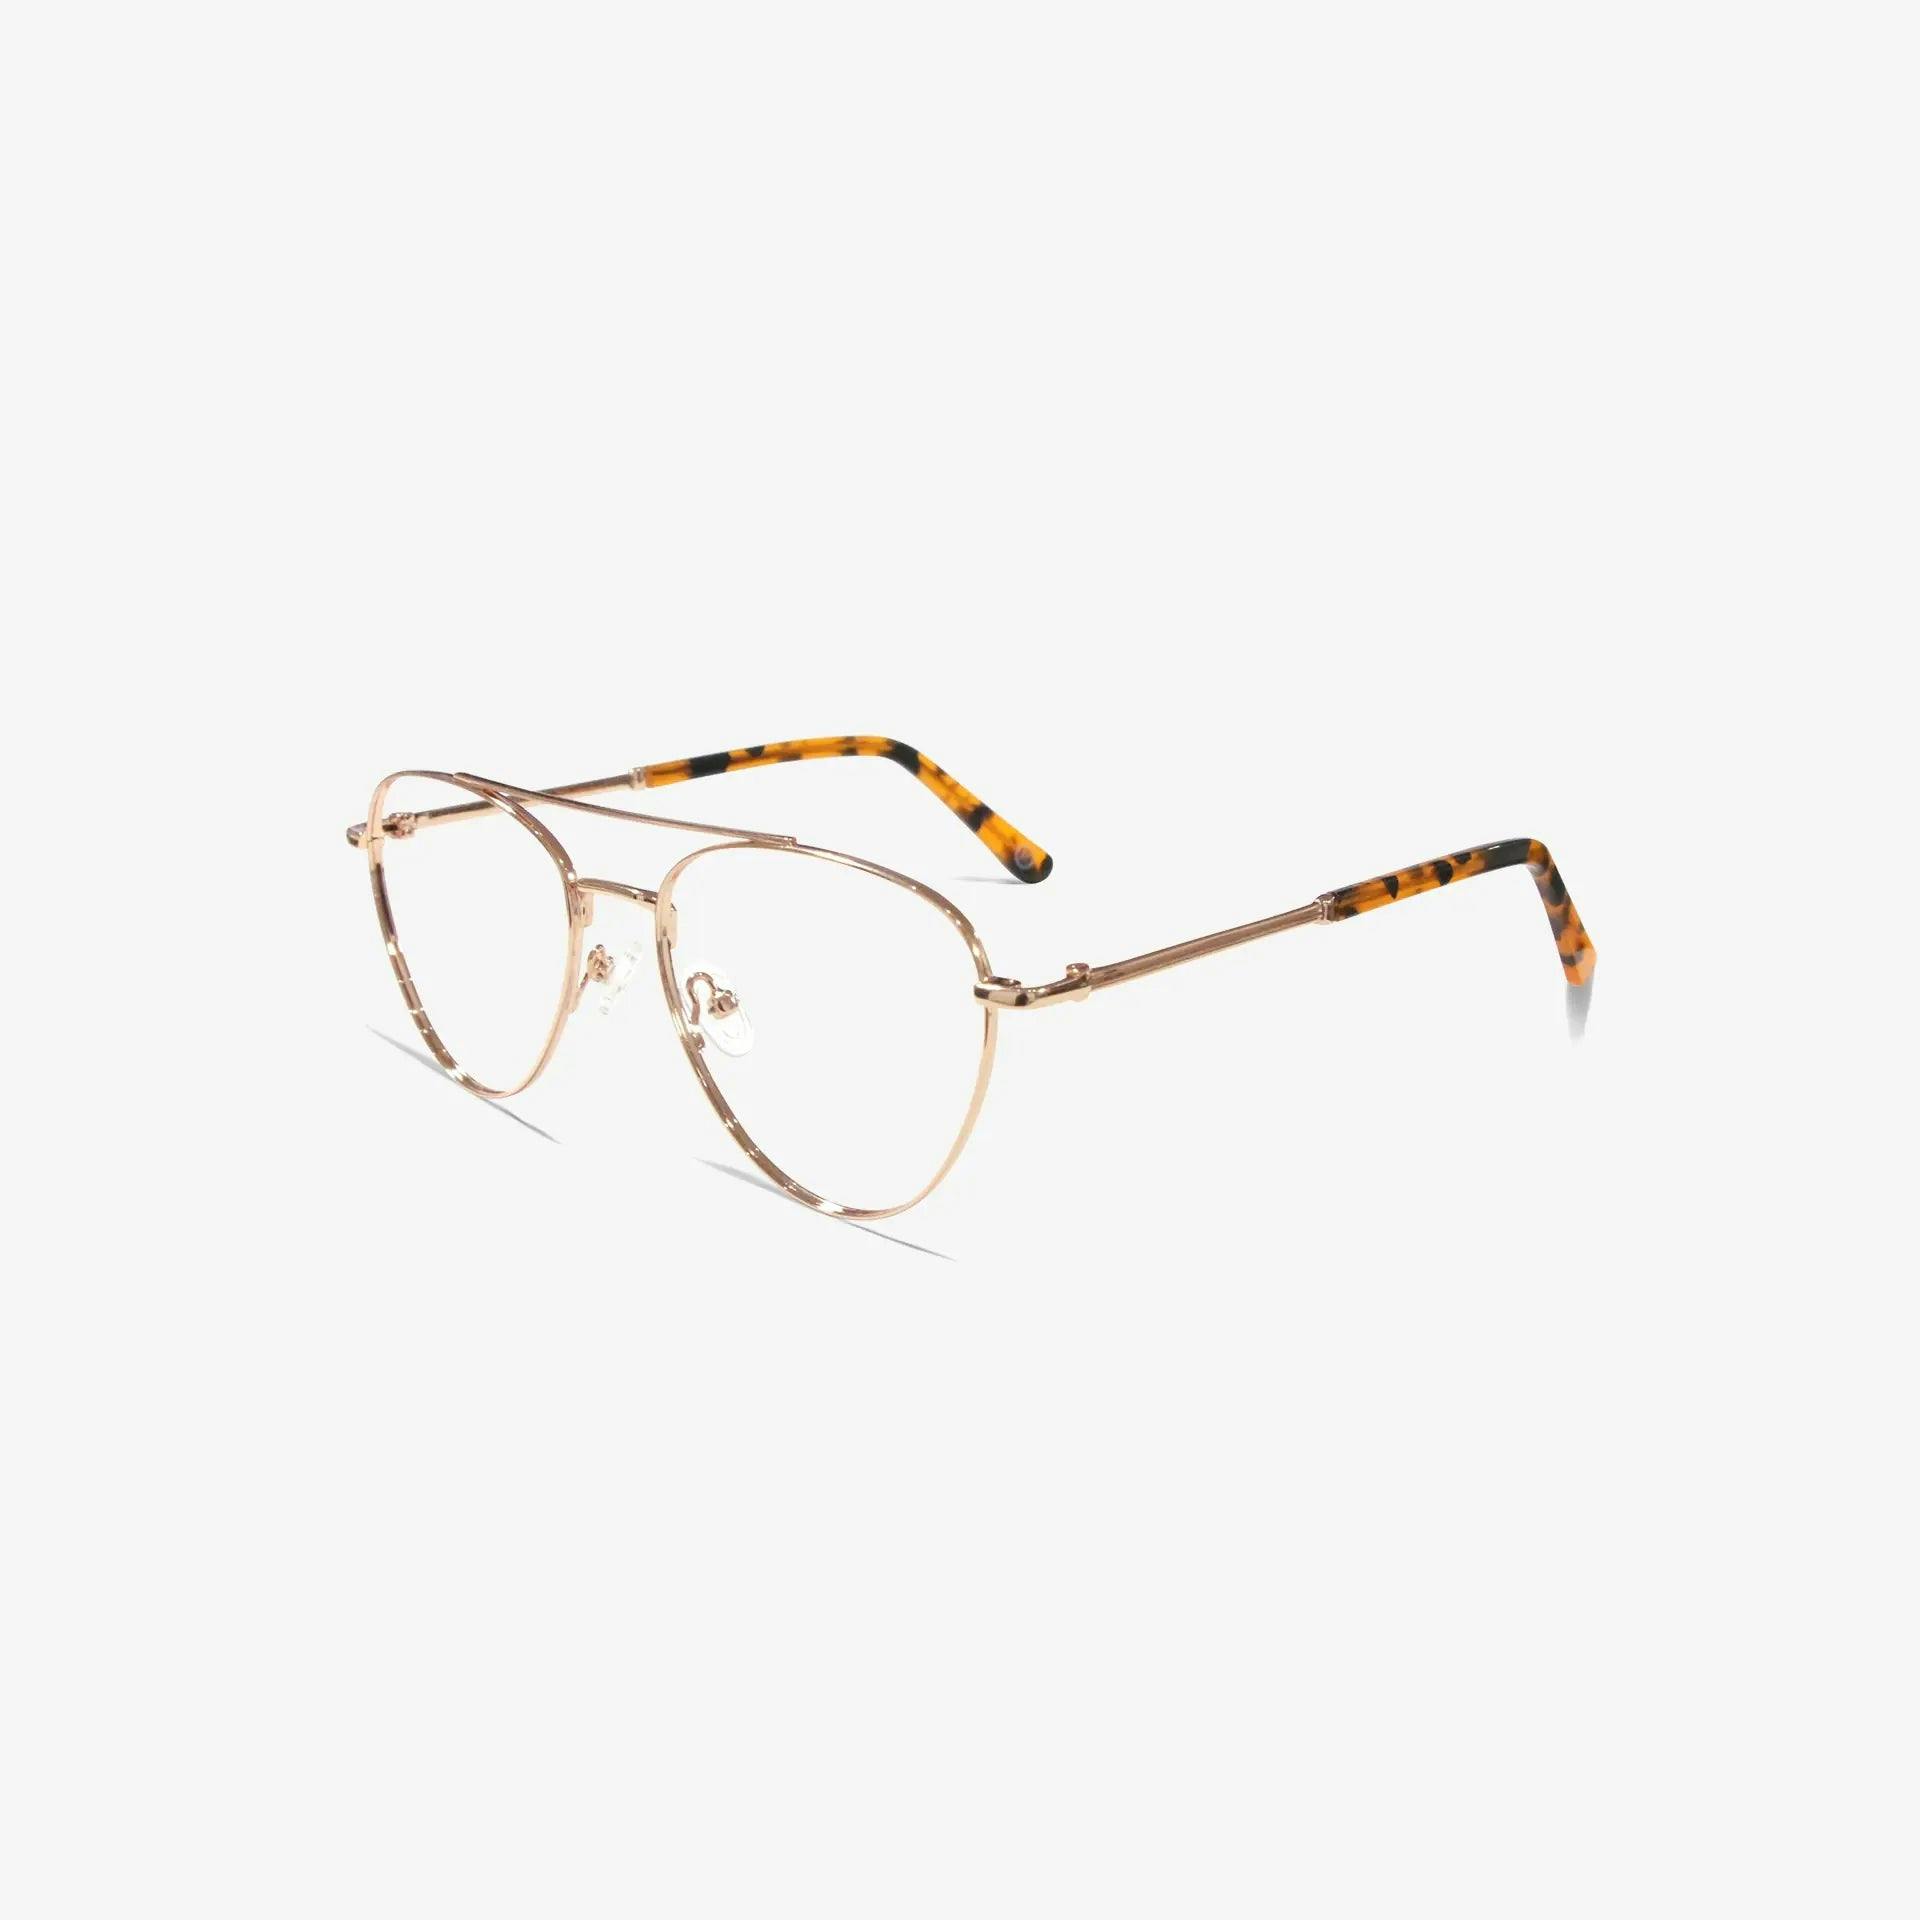 Huxley Eyewear | frame:prop-rose-gold